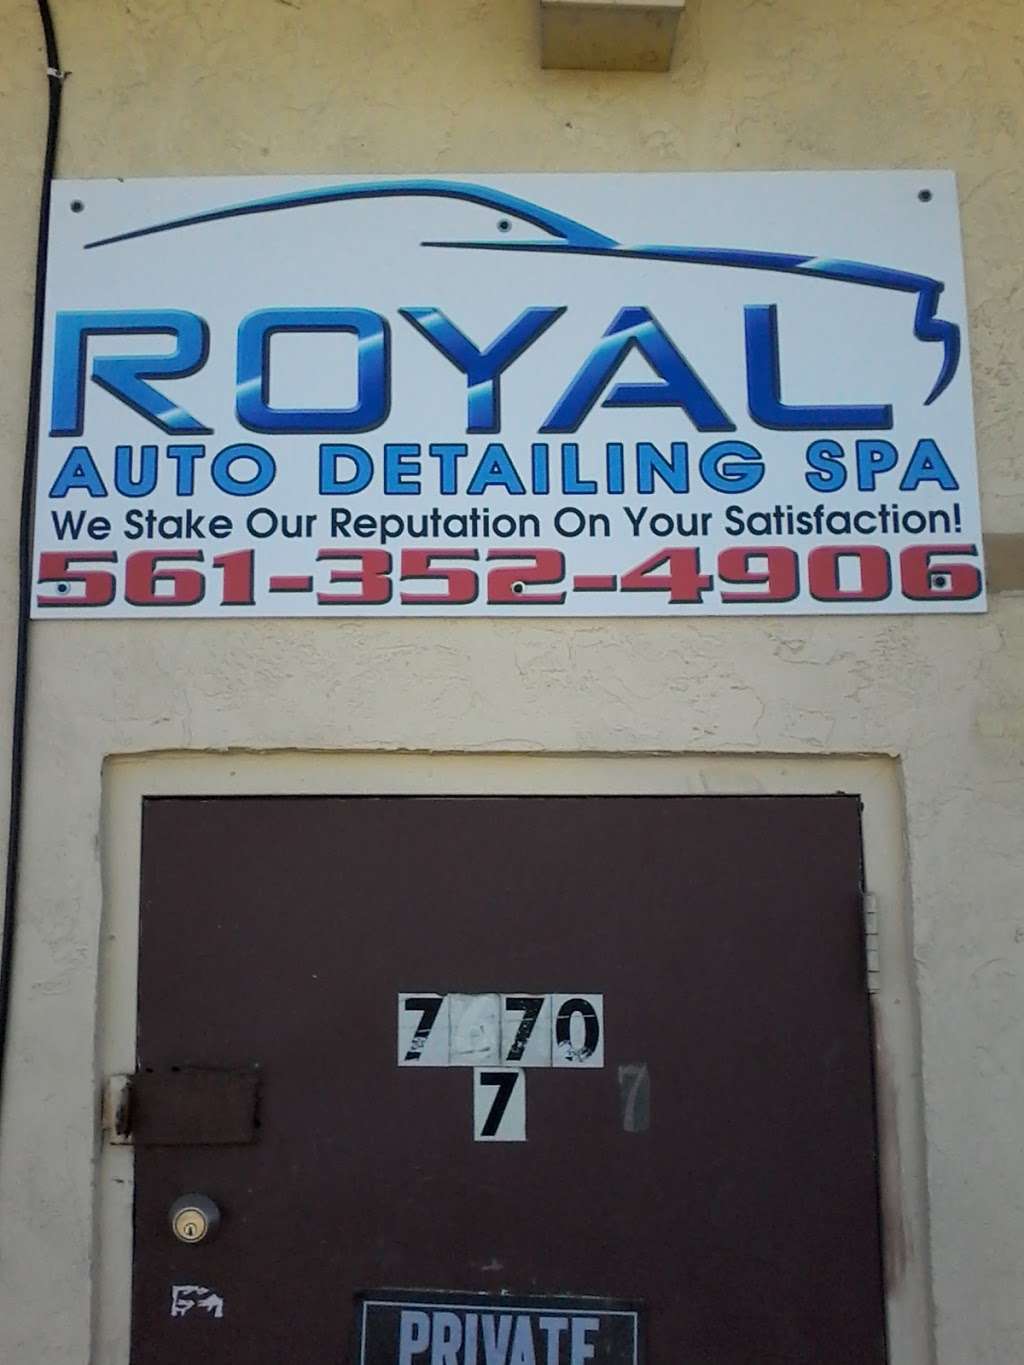 Royal Auto Detailing Spa | 7670 Hooper Rd, West Palm Beach, FL 33411 | Phone: (561) 352-4906